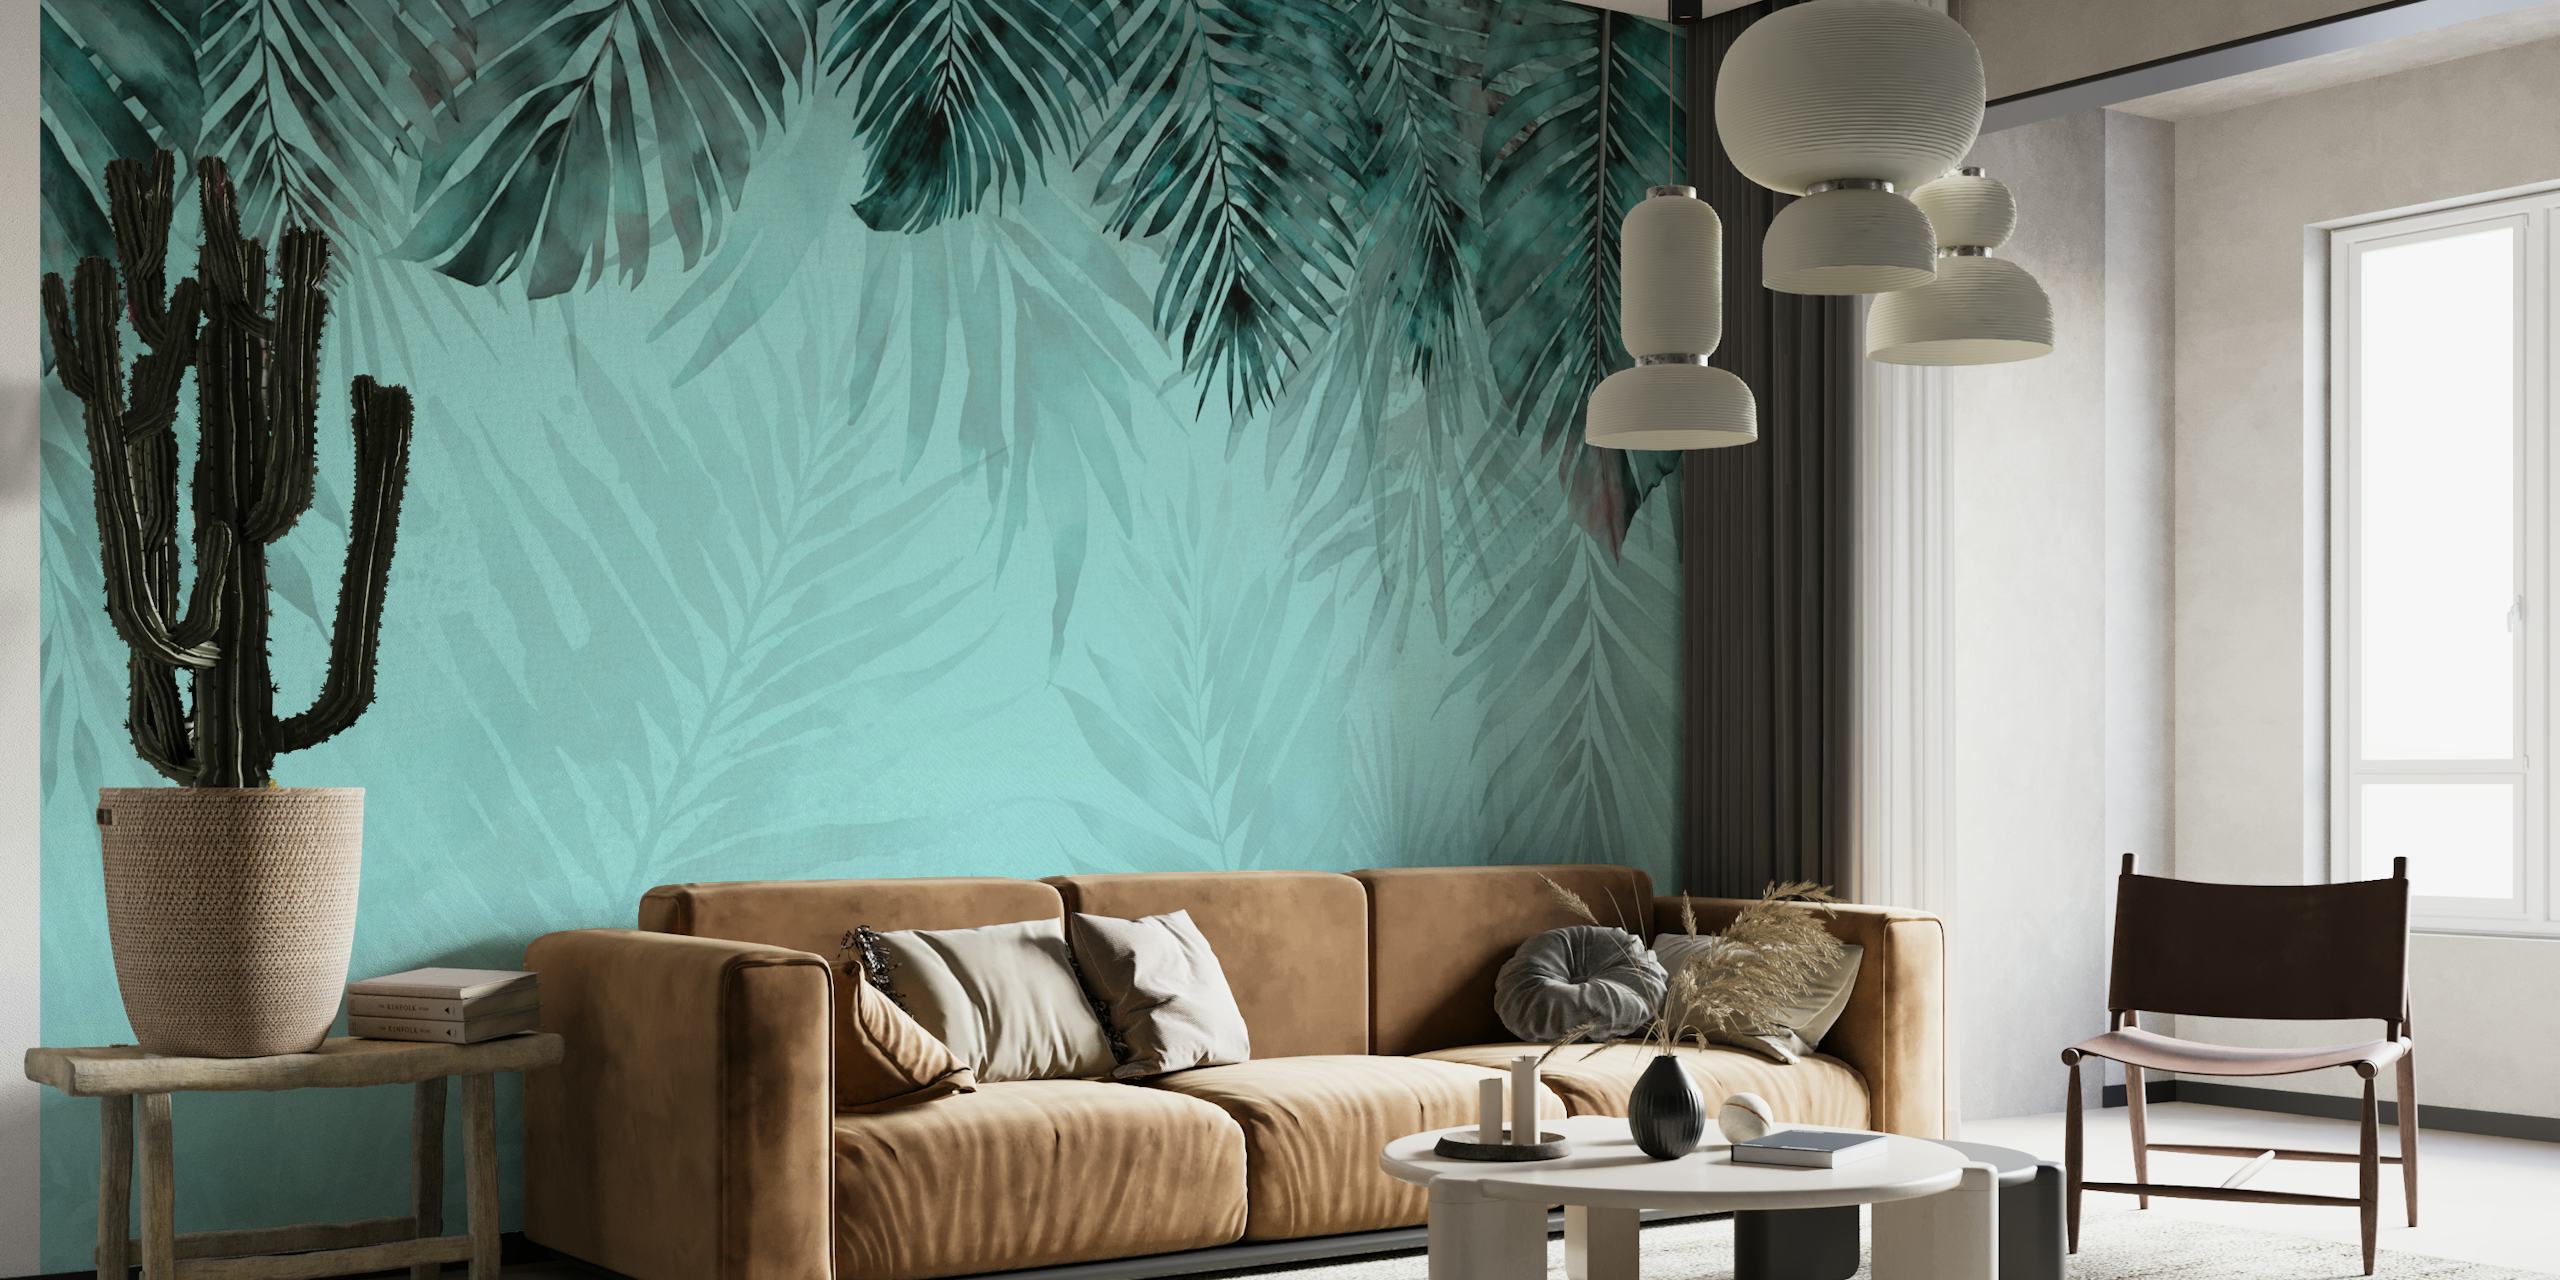 Türkis- und blaugrünes Wandbild mit Dschungelmotiv und tropischen Blattmustern